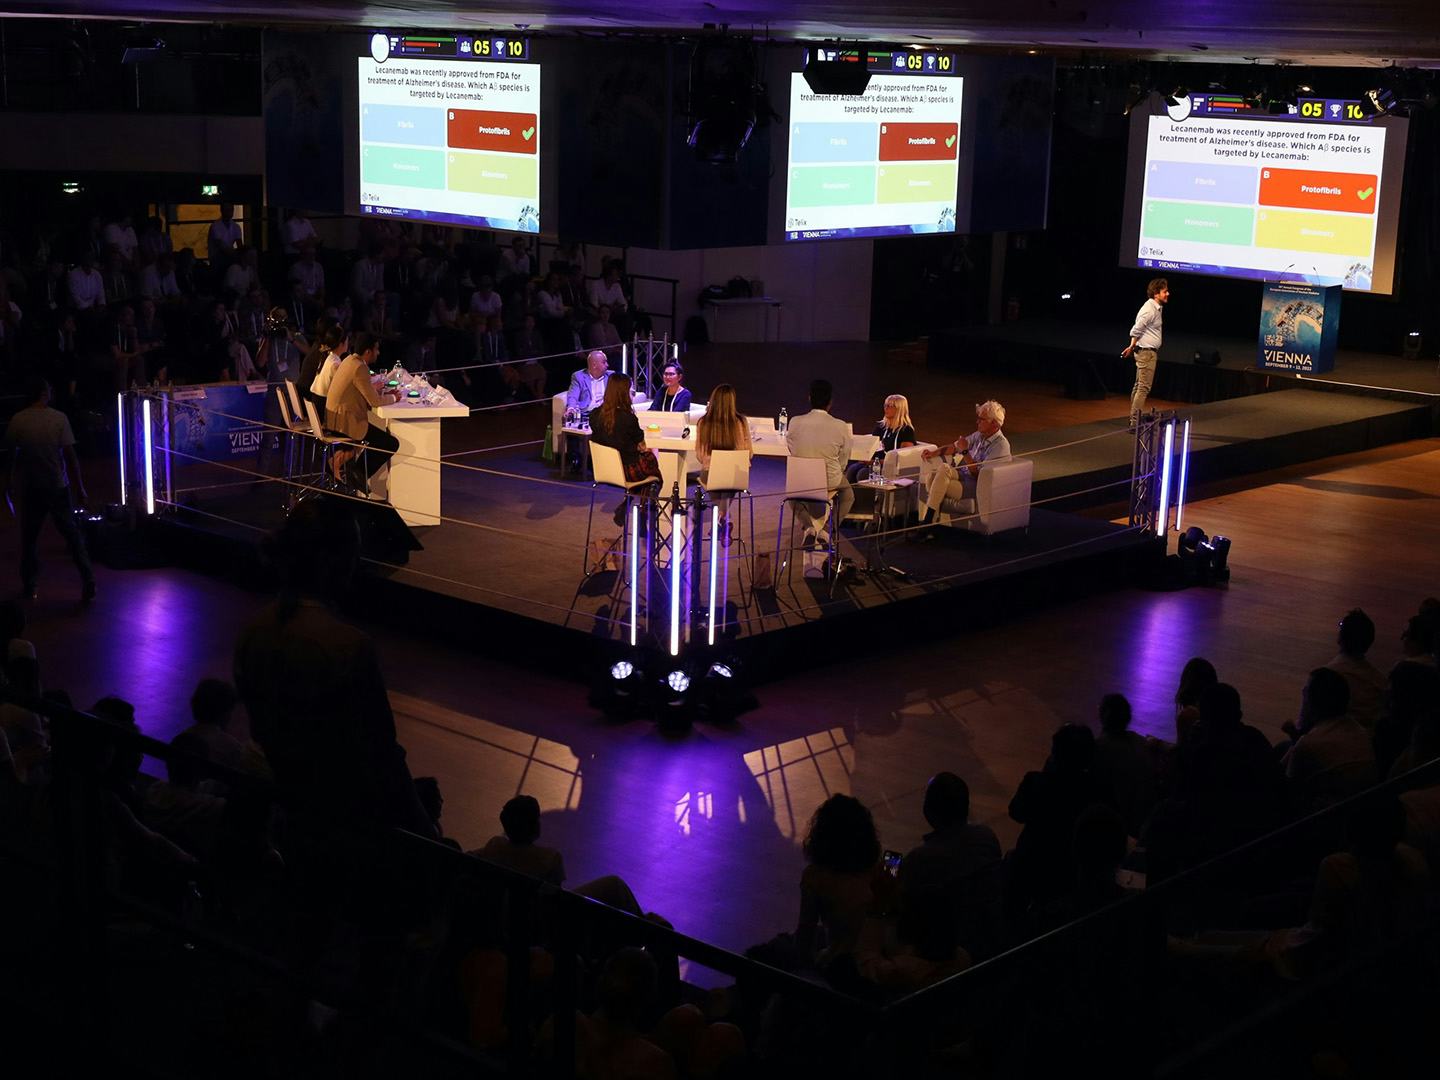 Foto: dunkler Raum mit Publikum und beleuchtetem Podium mit Diskussionsteilnehmern und Praesentation auf Leinwaenden